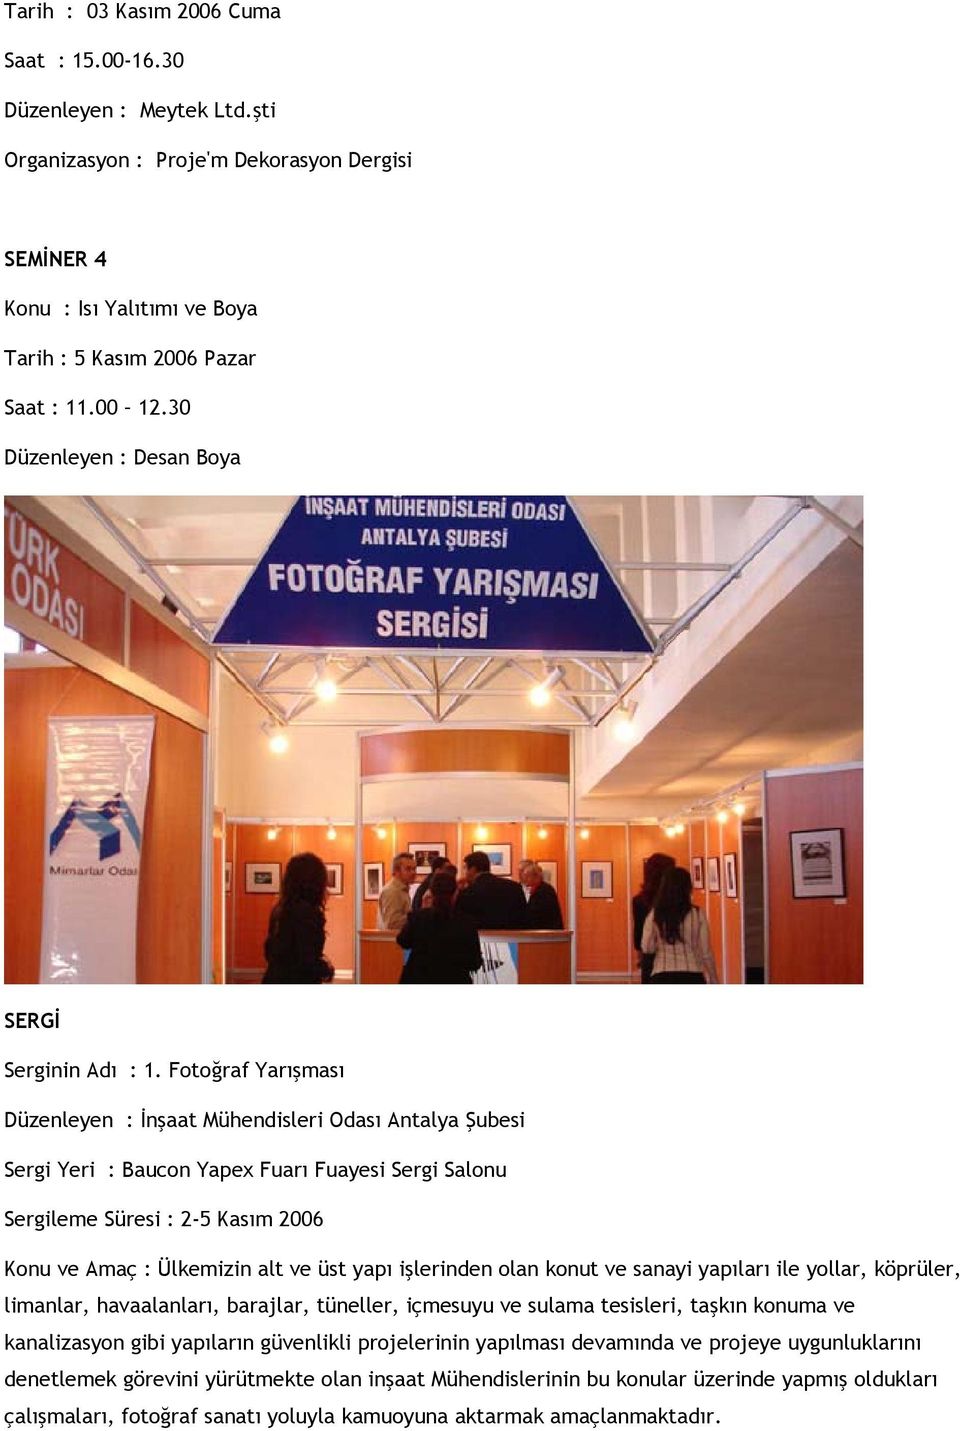 Fotoğraf Yarışması Düzenleyen : İnşaat Mühendisleri Odası Antalya Şubesi Sergi Yeri : Baucon Yapex Fuarı Fuayesi Sergi Salonu Sergileme Süresi : 2-5 Kasım 2006 Konu ve Amaç : Ülkemizin alt ve üst